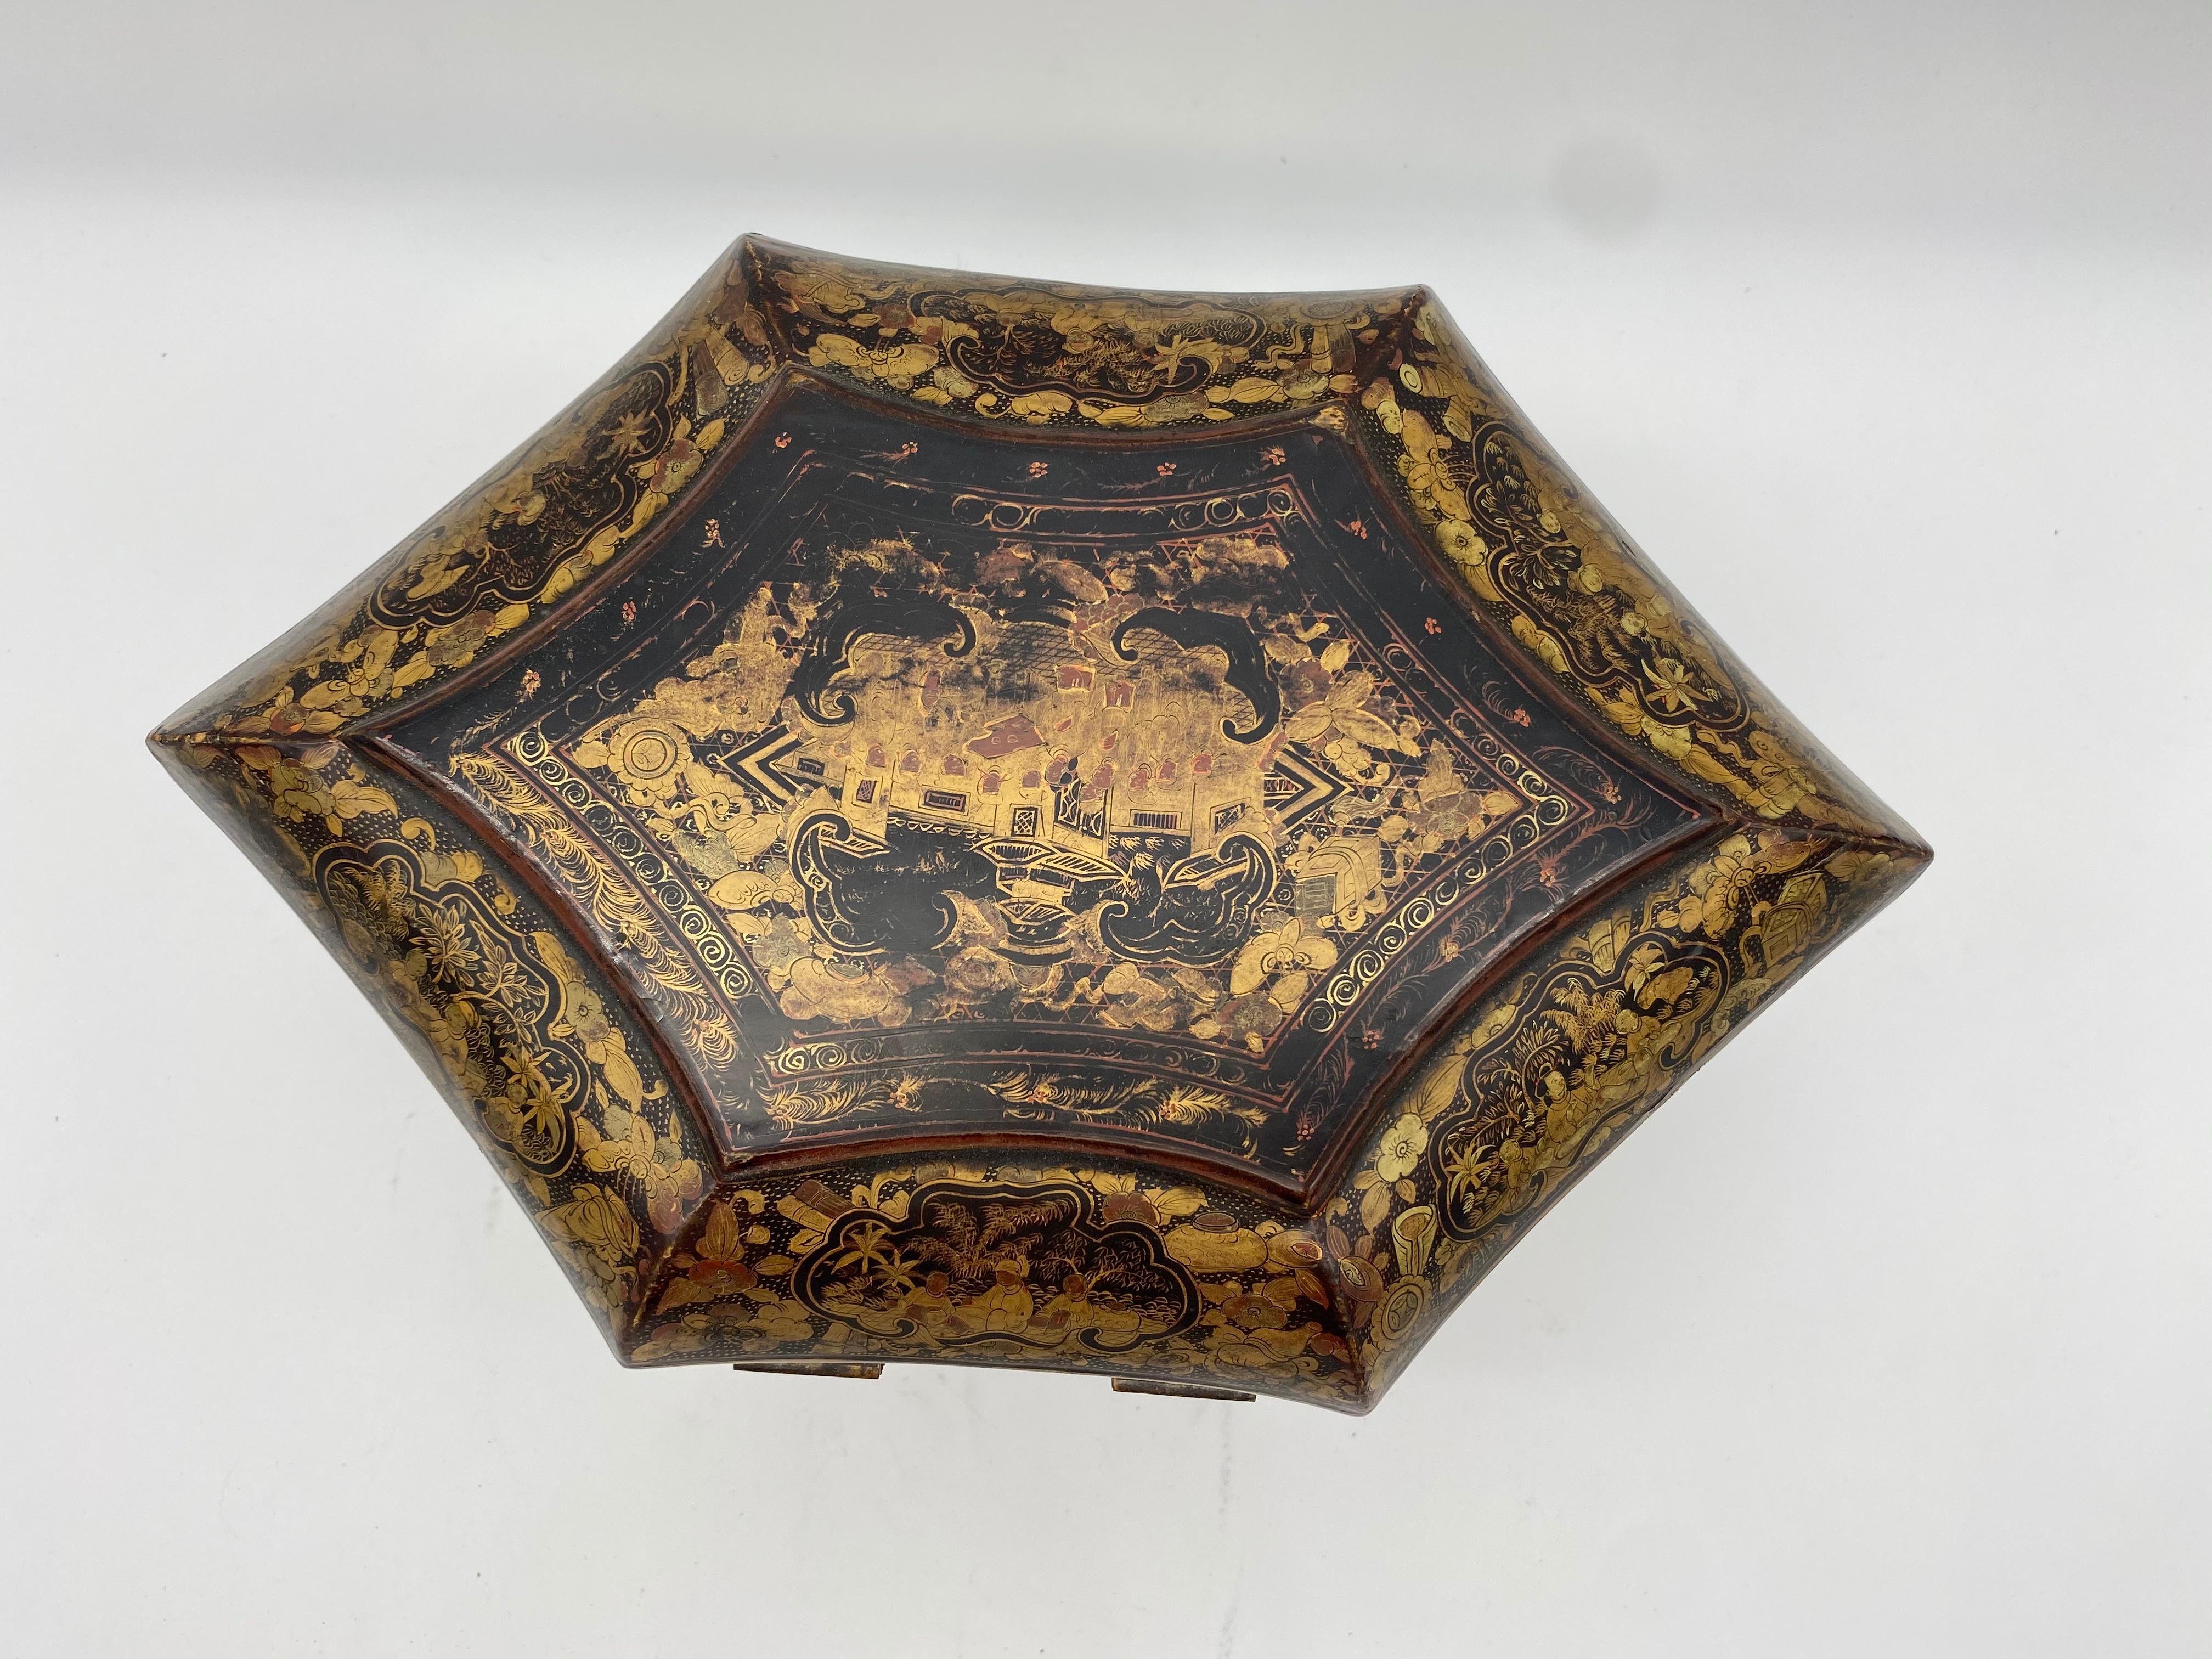 Boîte à thé en laque d'or chinoise du XIXe siècle de la dynastie Qing. Forme unique, difficile à trouver.